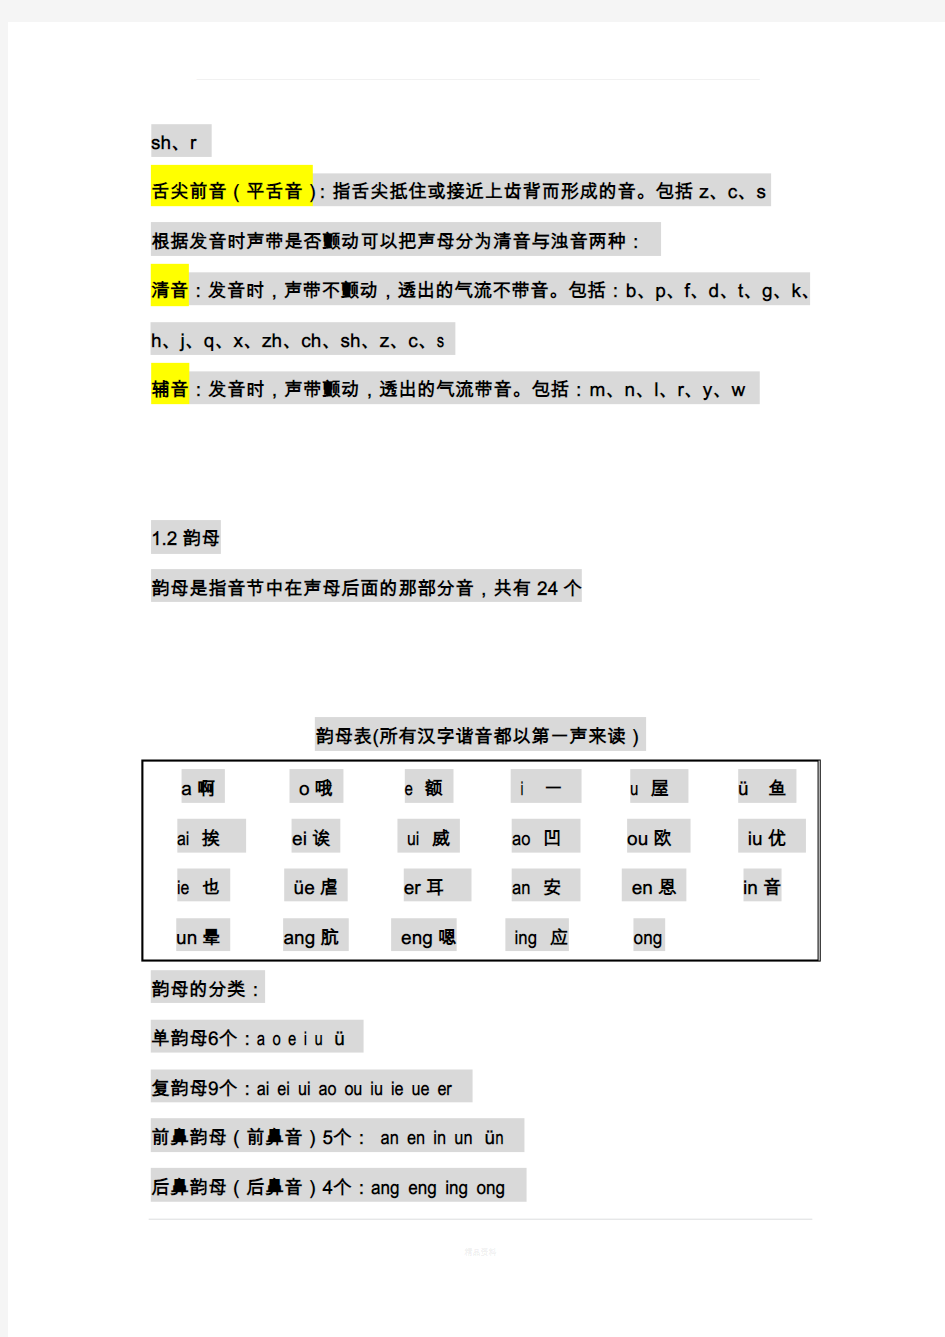 汉语拼音学习大全___完整版91824